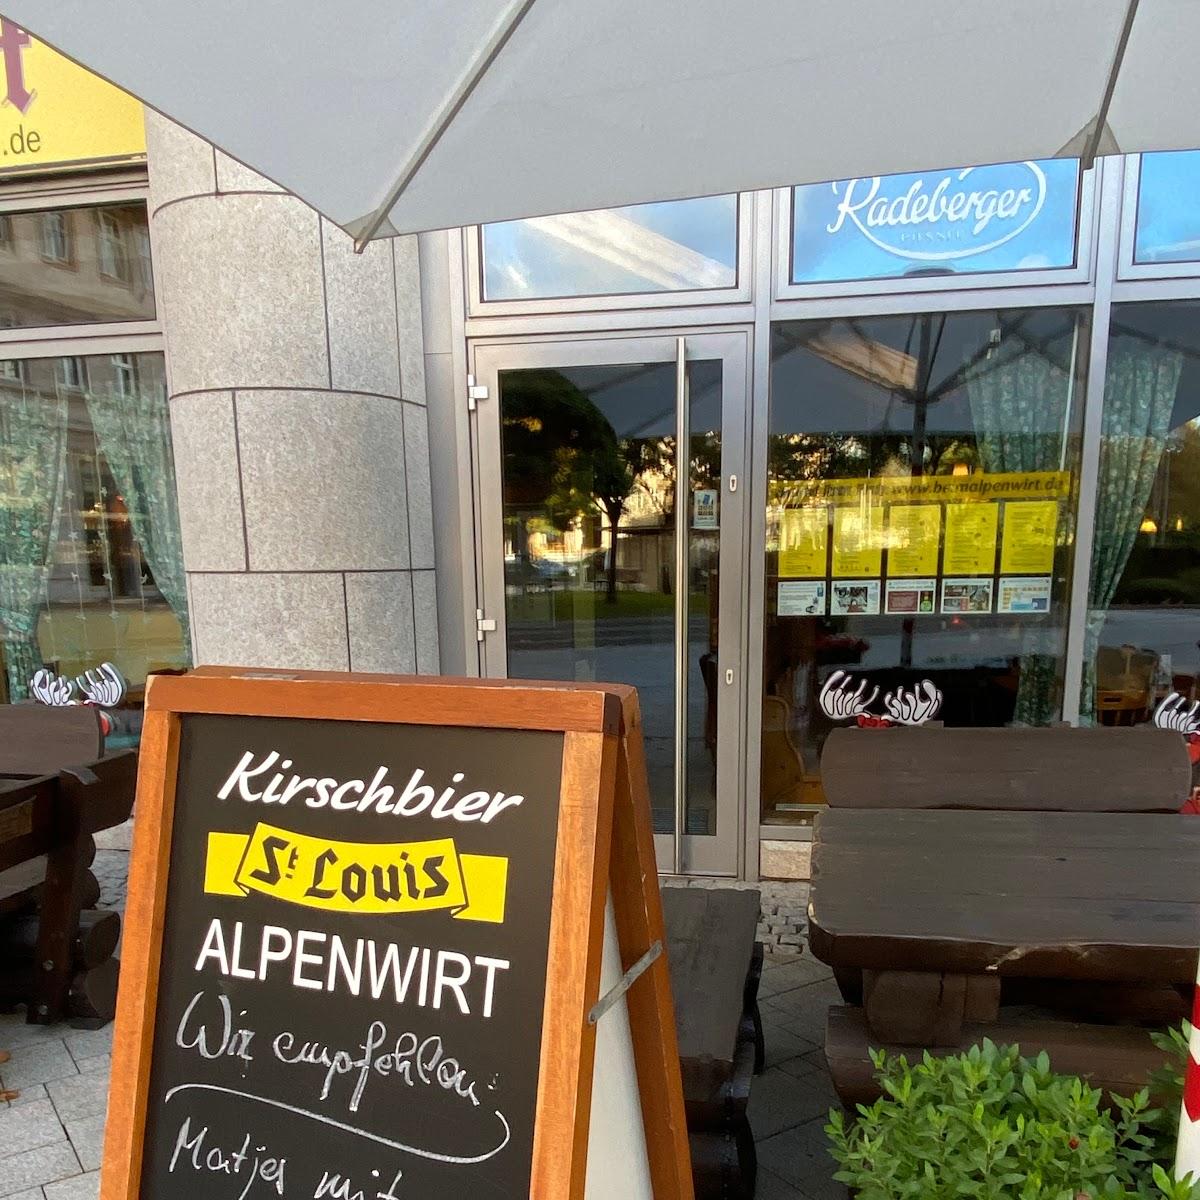 Restaurant "Alpenwirt" in Berlin